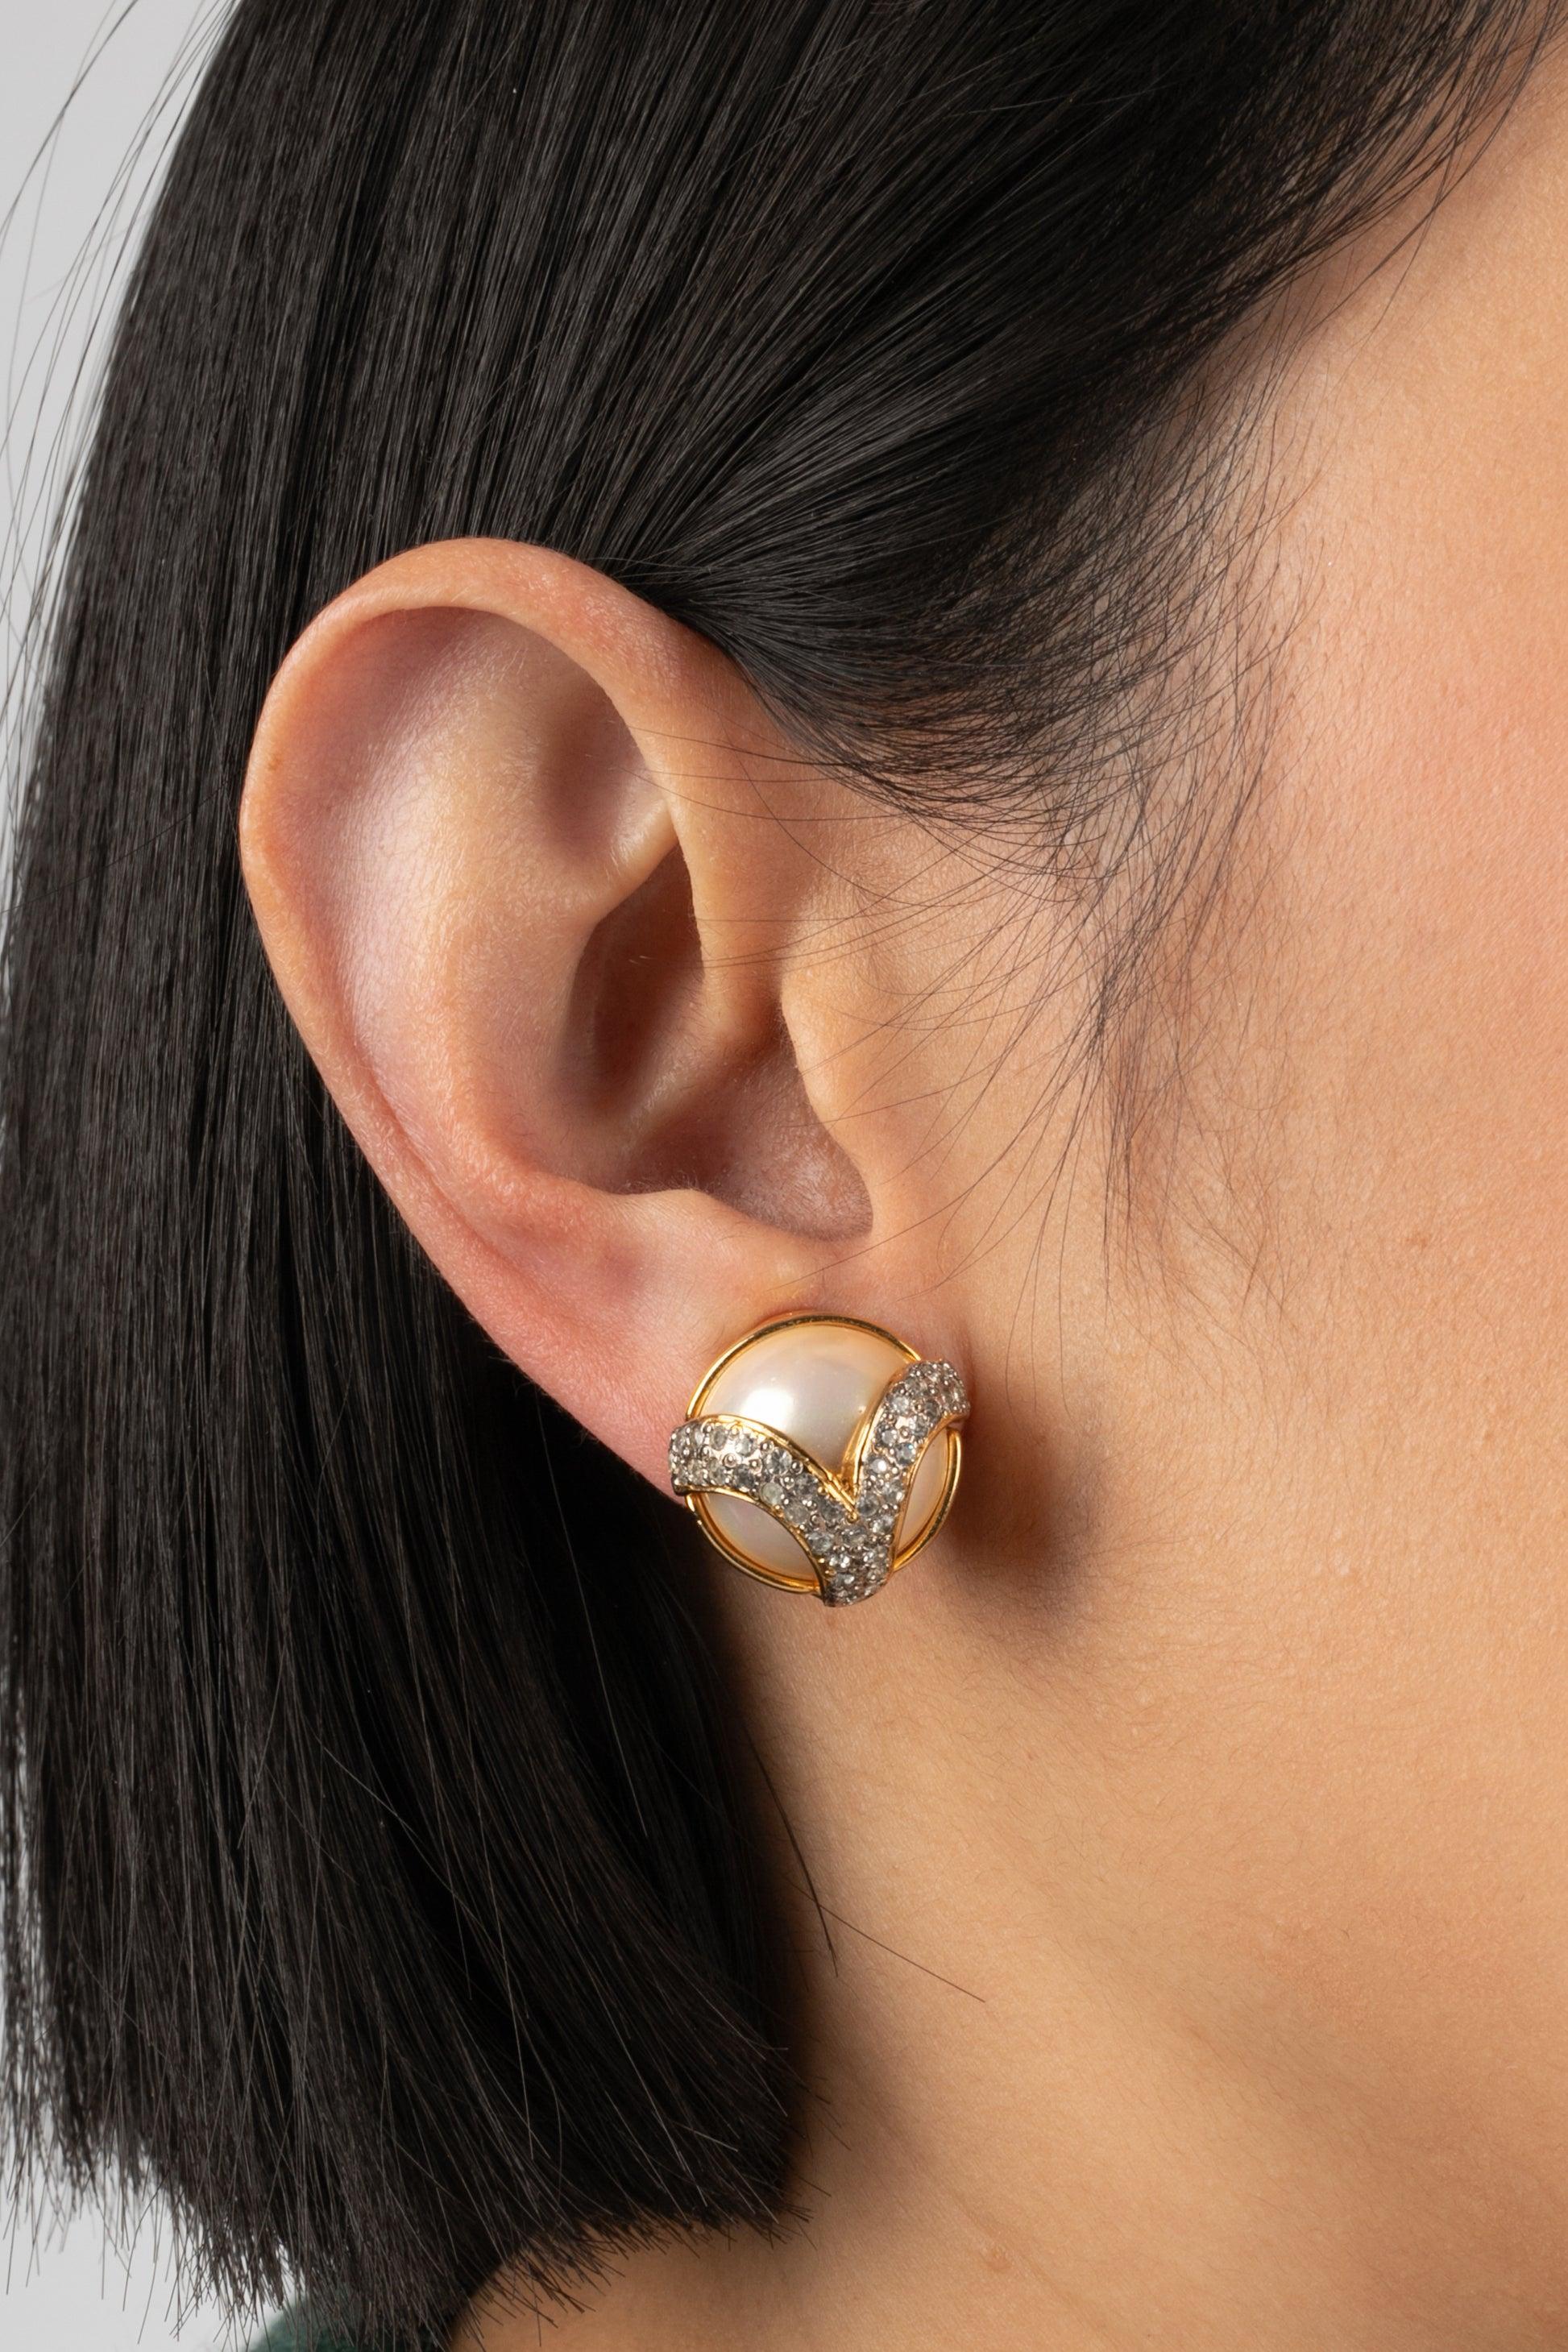 Valentino - Goldene Ohrringe aus Metall mit Strasssteinen und Perlencabochons.

Zusätzliche Informationen:
Zustand: Sehr guter Zustand
Abmessungen: Durchmesser: 1,7 cm

Referenz des Sellers: BO138
